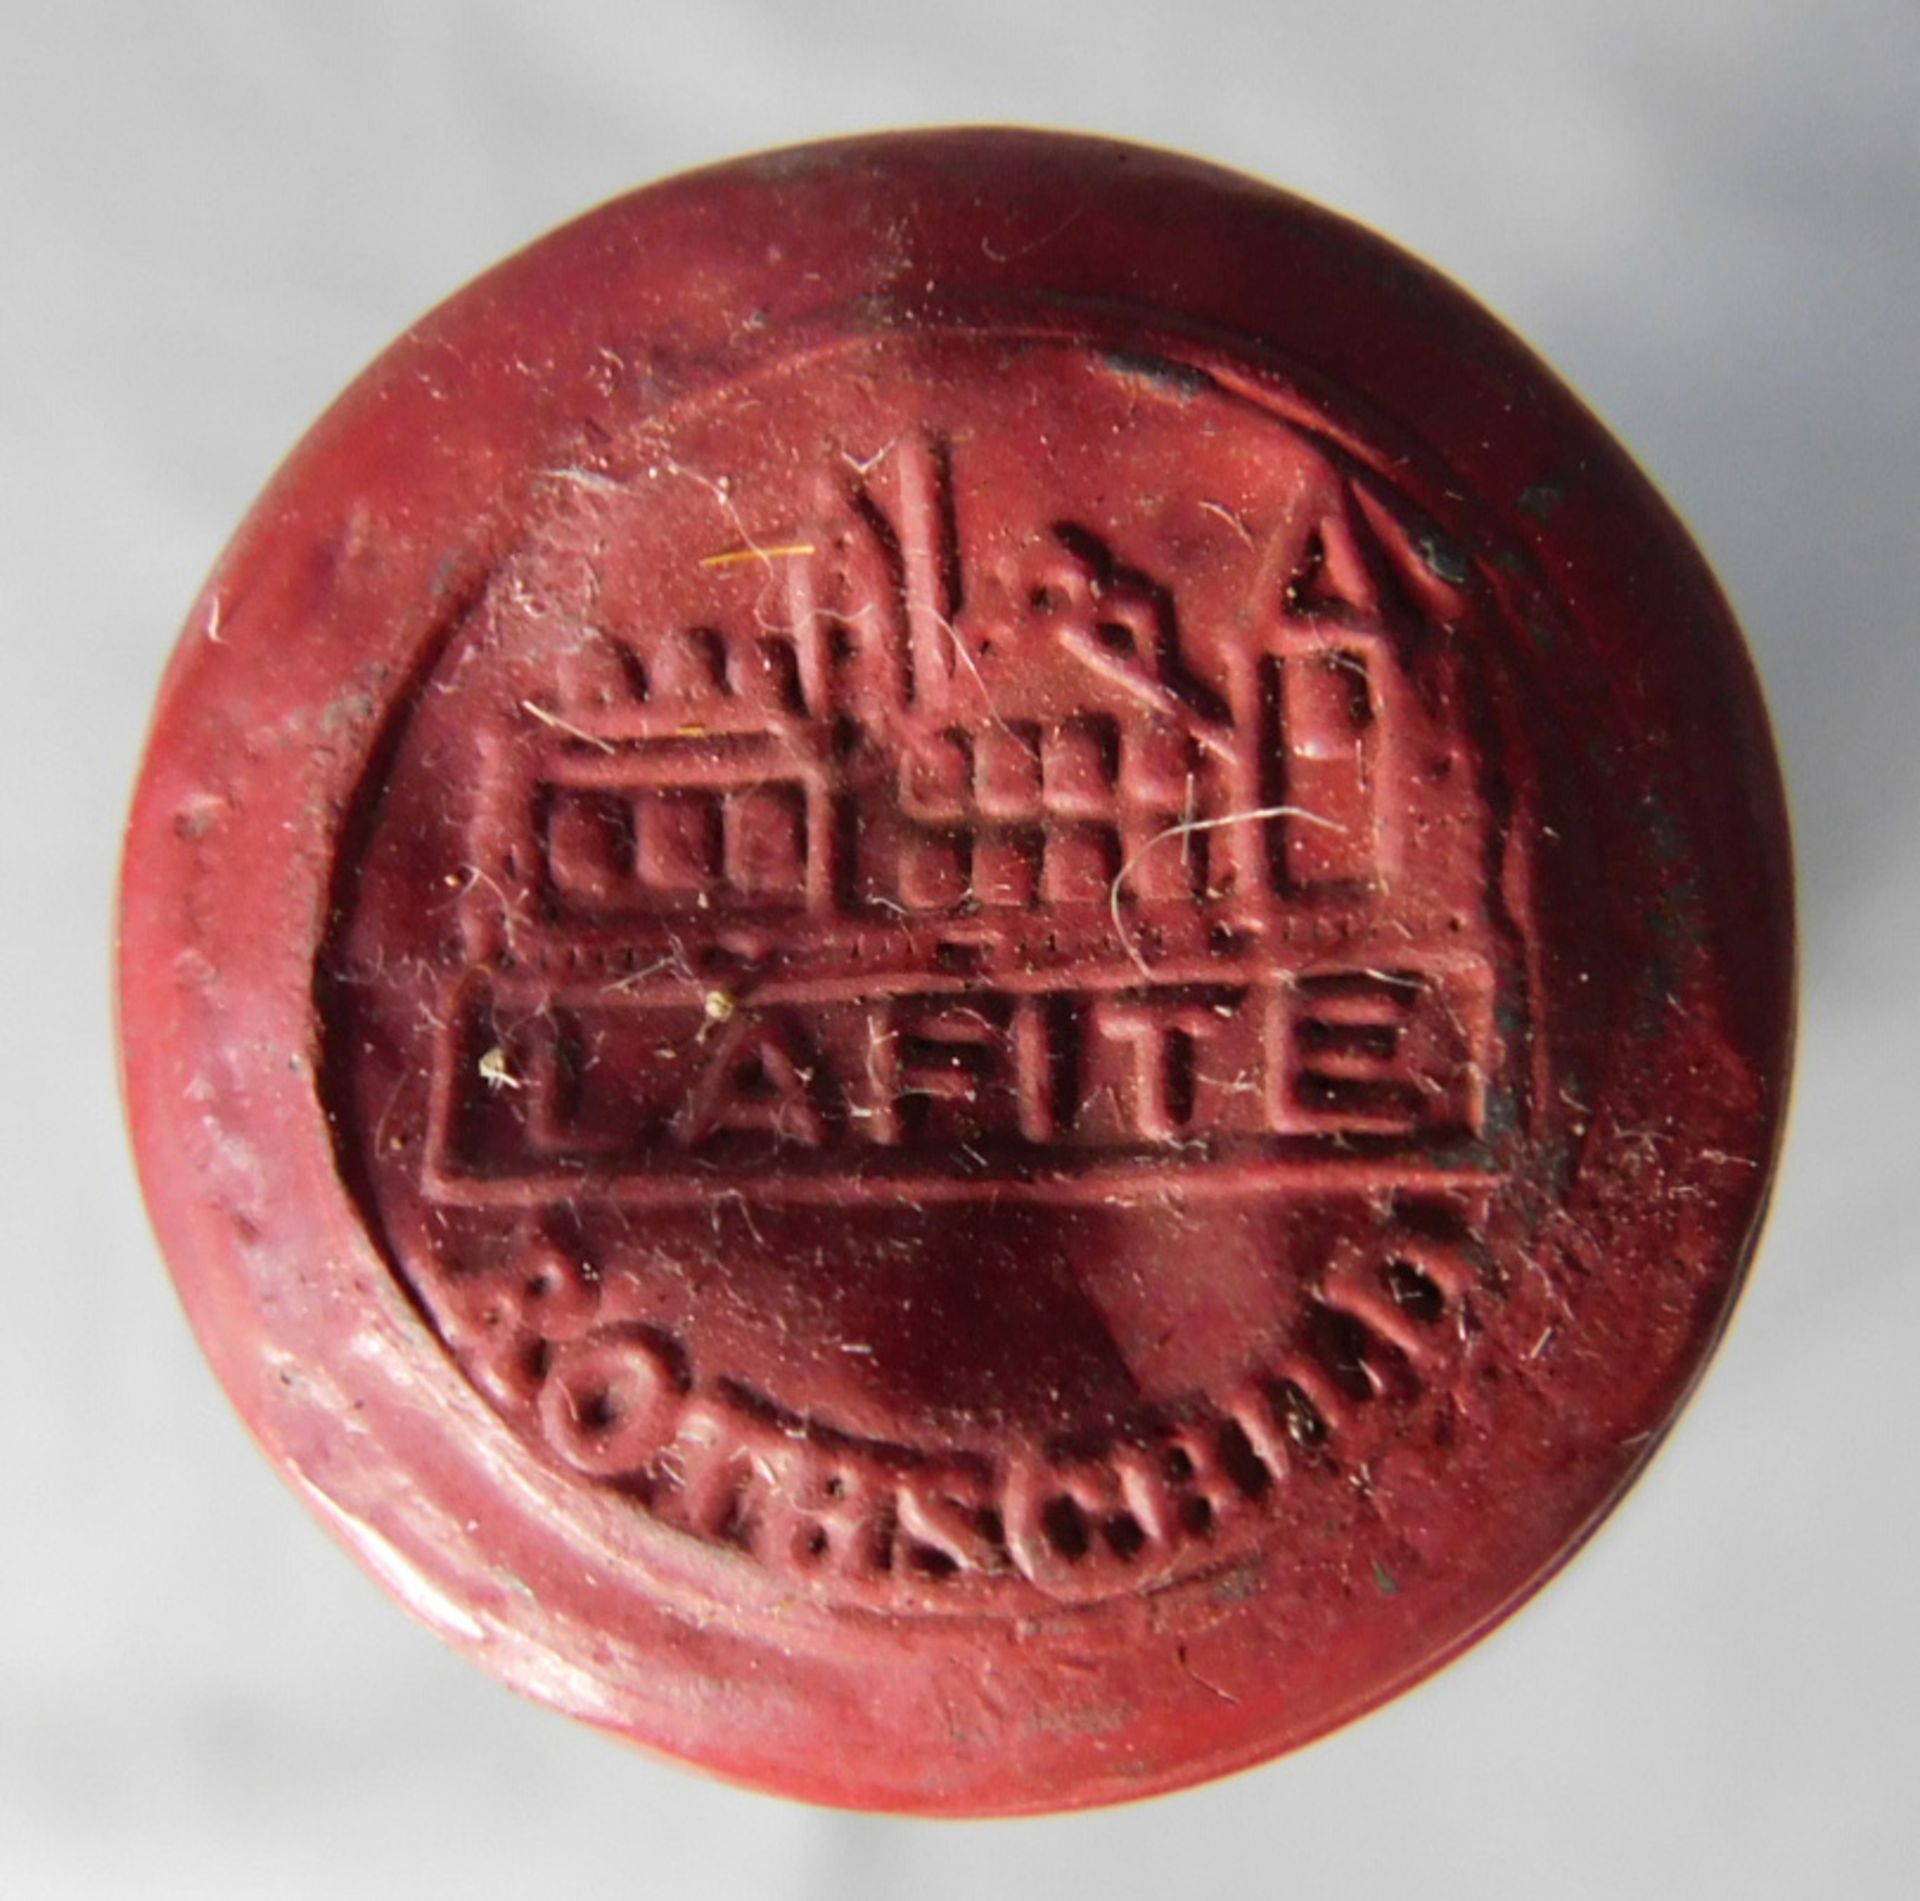 1967 Chateau Lafite Rothschild 1er Grand Cru Classé. - Image 3 of 4